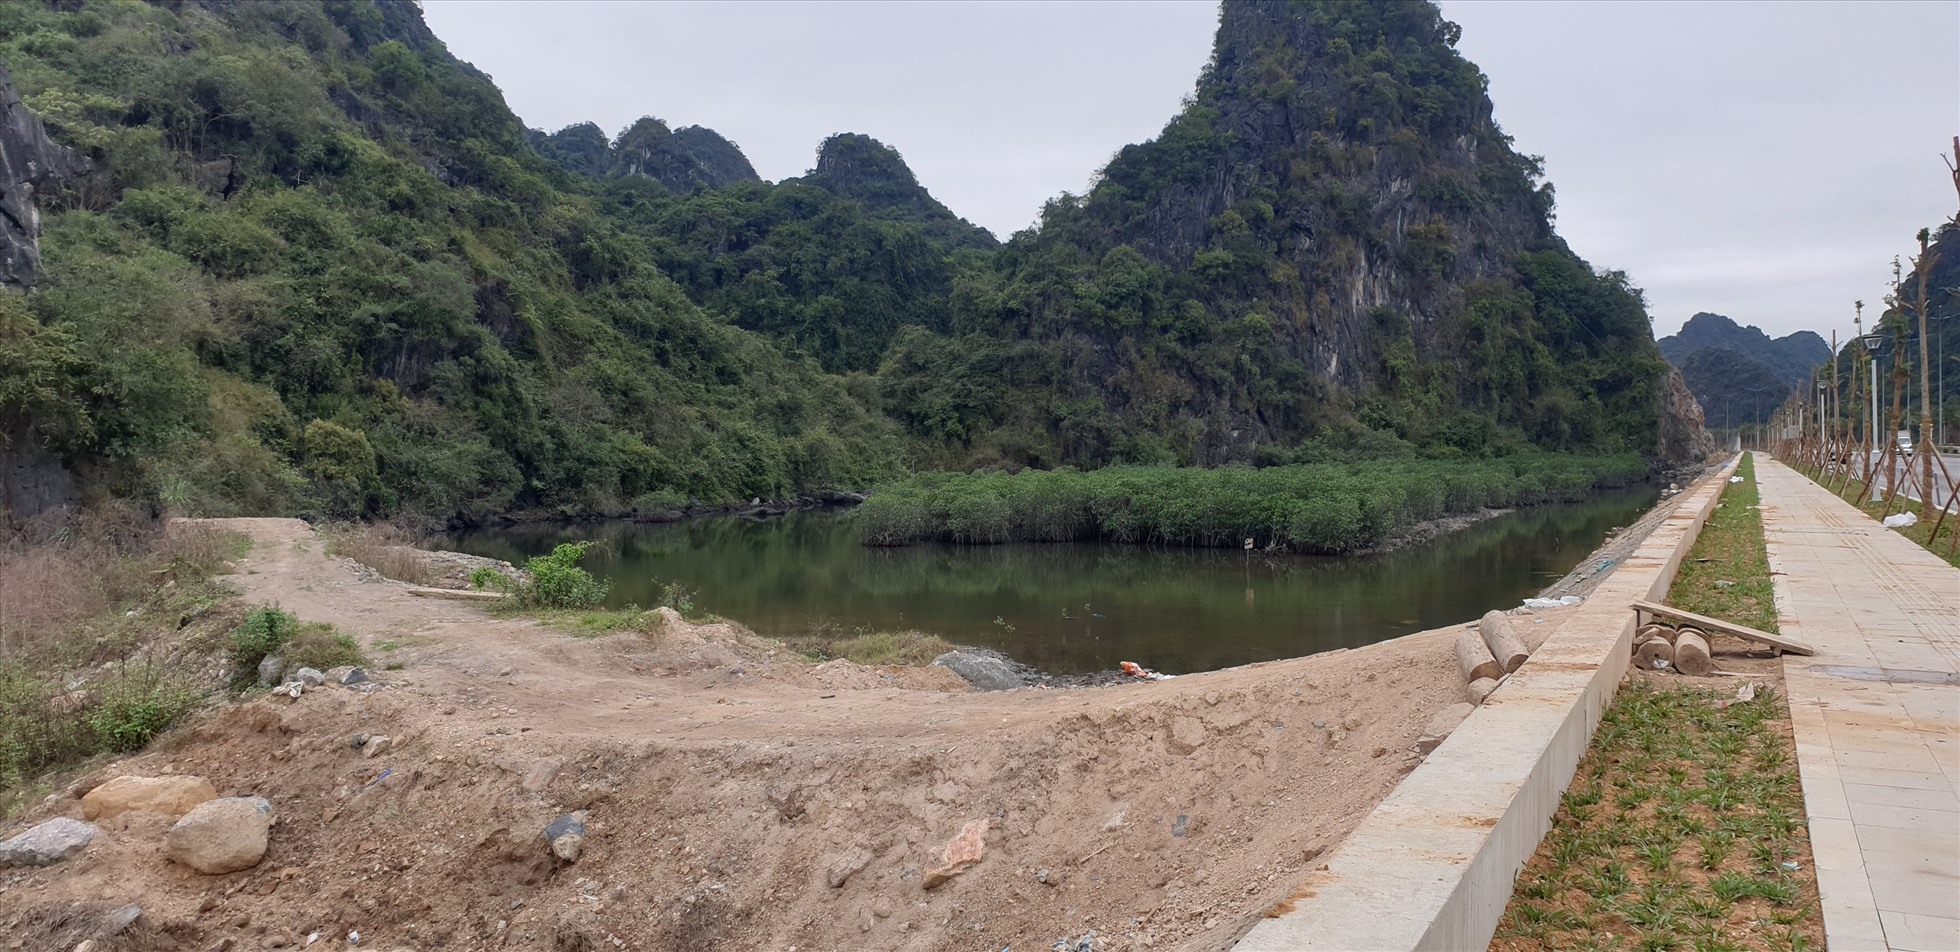 Hiện trang đường do dân tự làm để kết nối vào đường ven biển Hạ Long - Cẩm Phả ngày 30.4.2023. Ảnh: Nguyễn Hùng